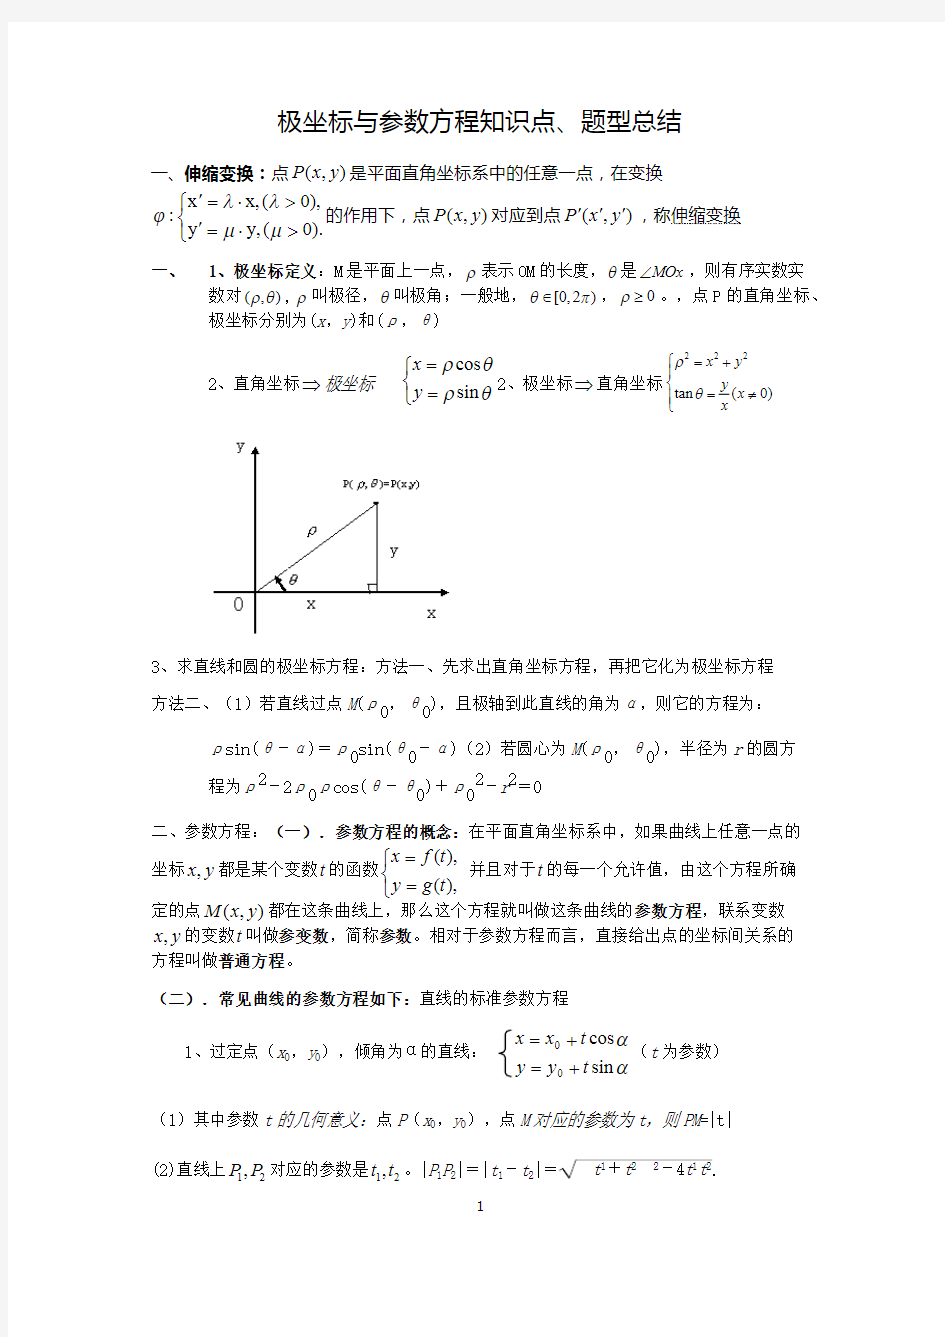 (完整版)极坐标与参数方程知识点、题型总结(最新整理)